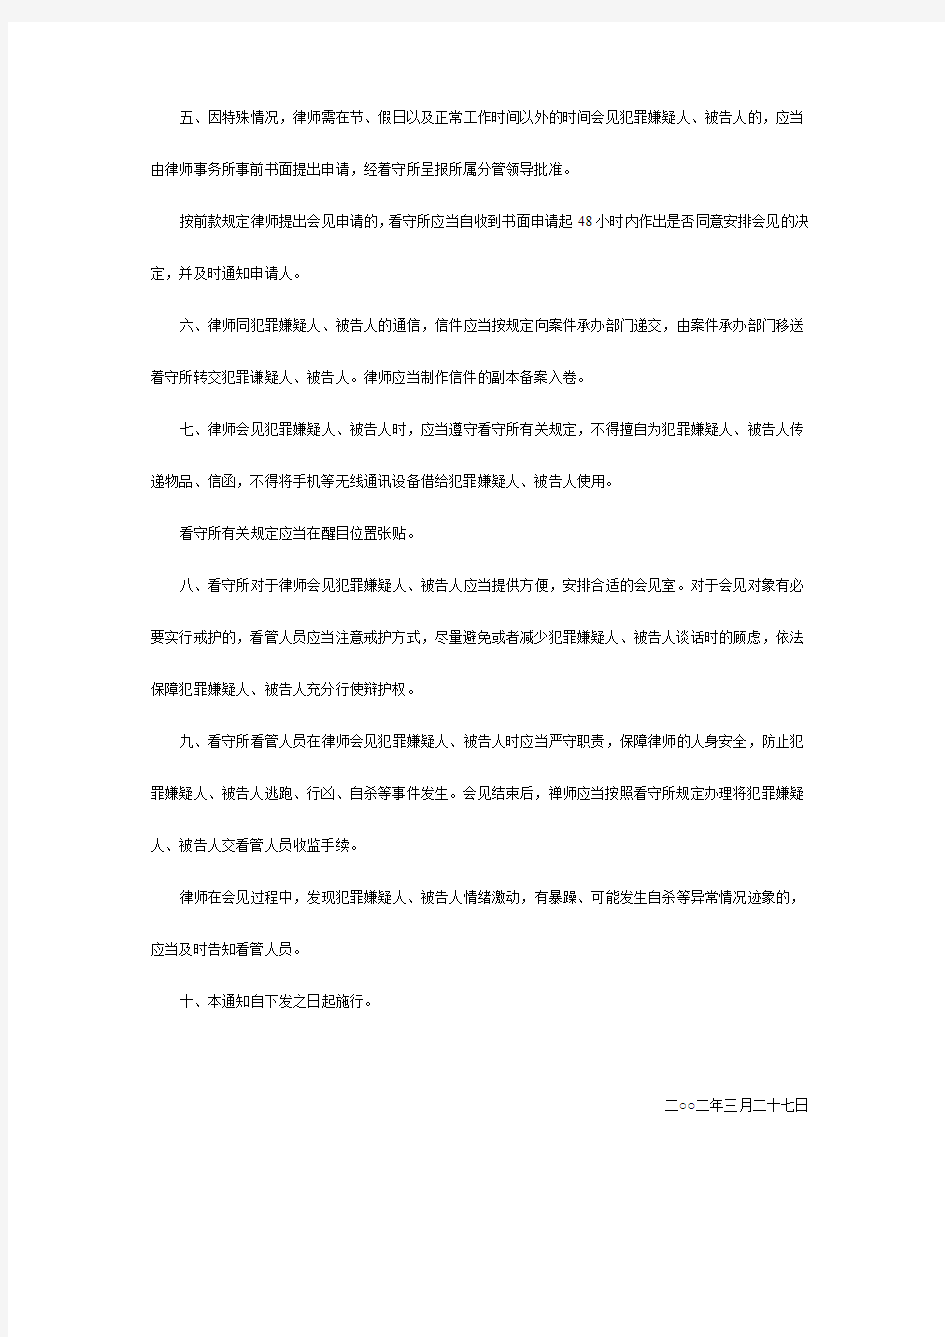 上海市司法局、上海市公安局关于律师在看守所会见犯罪嫌疑人、被告人若干问题的通知